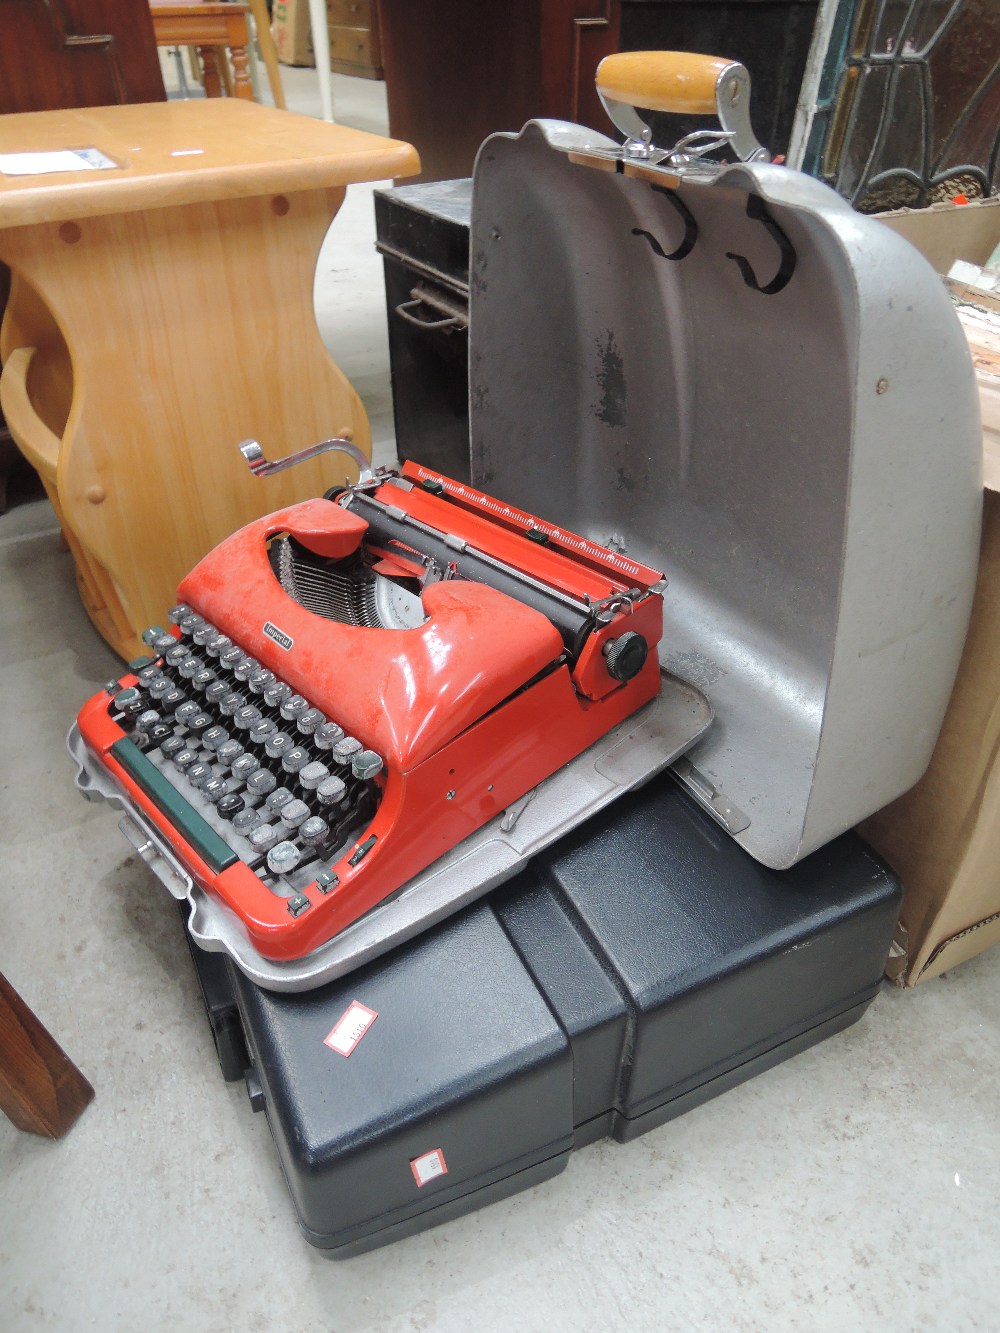 Two vintage typewriters